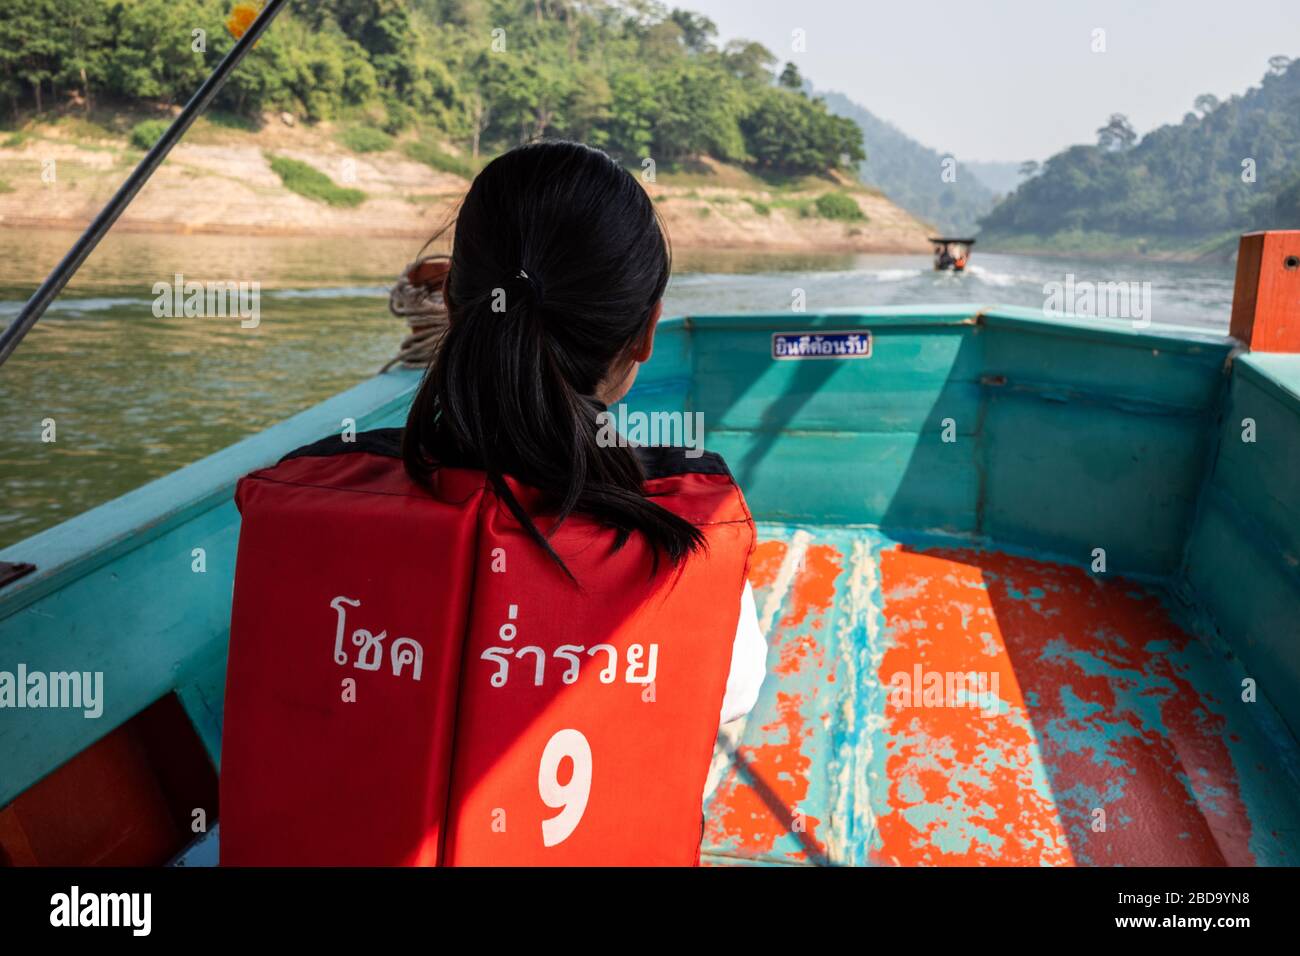 Nakhon Nayok, Thaïlande - 2 février 2020 : la jeune fille thaïlandaise porte un gilet de vie orange avec le nom du bateau en langue thaïlandaise tout en prenant un bateau en bois avec sp Banque D'Images